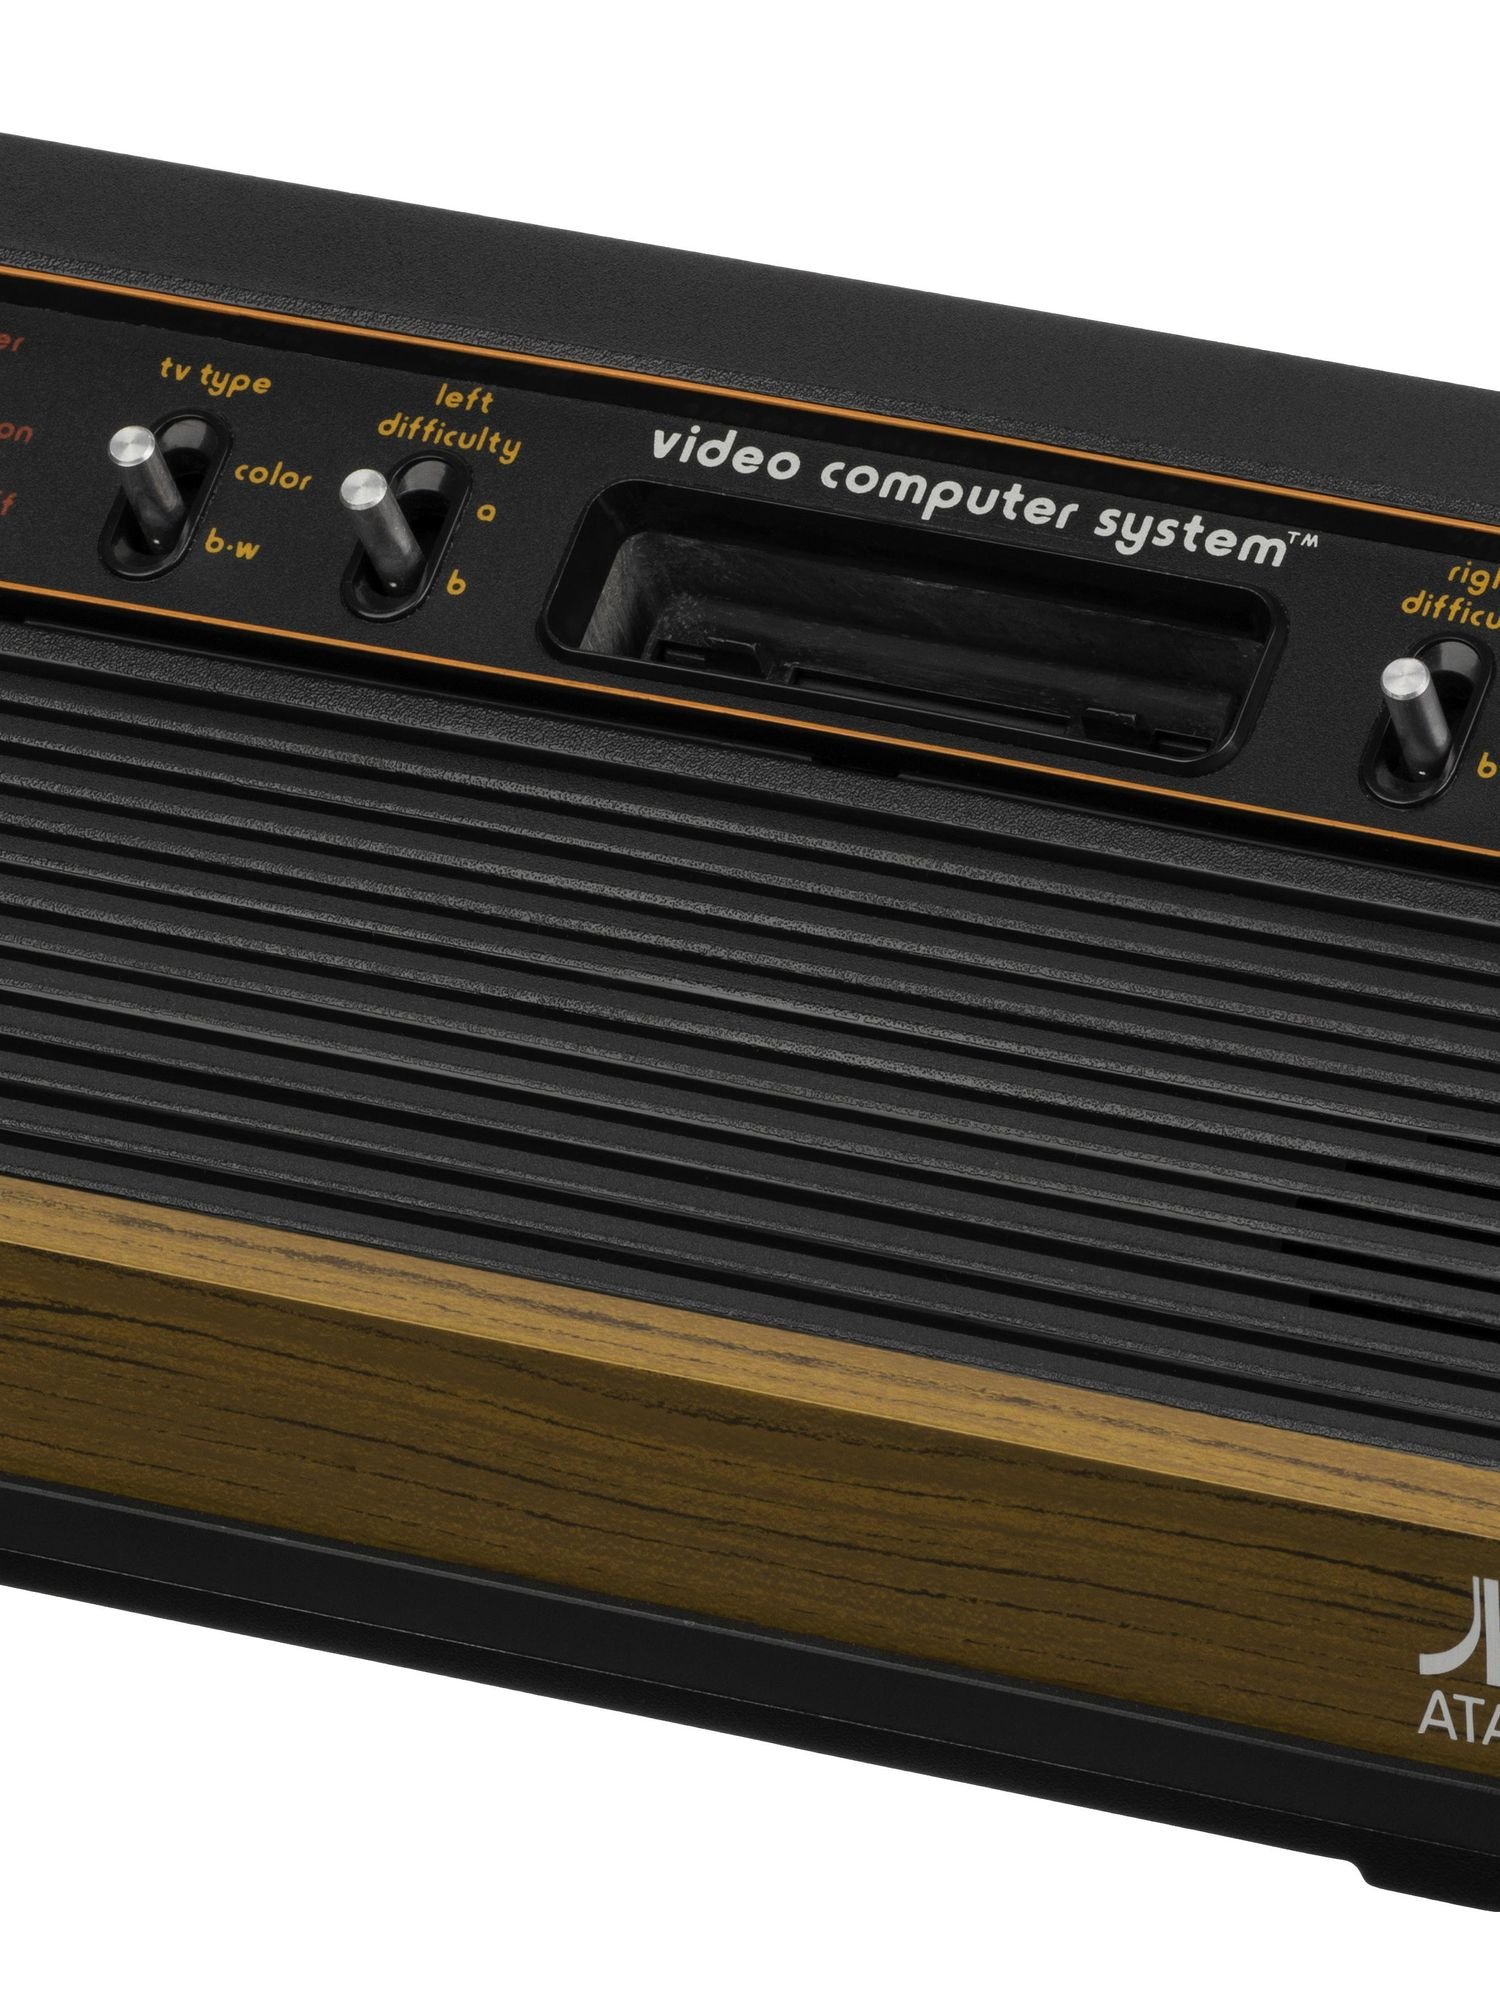 Inventing the Atari 2600